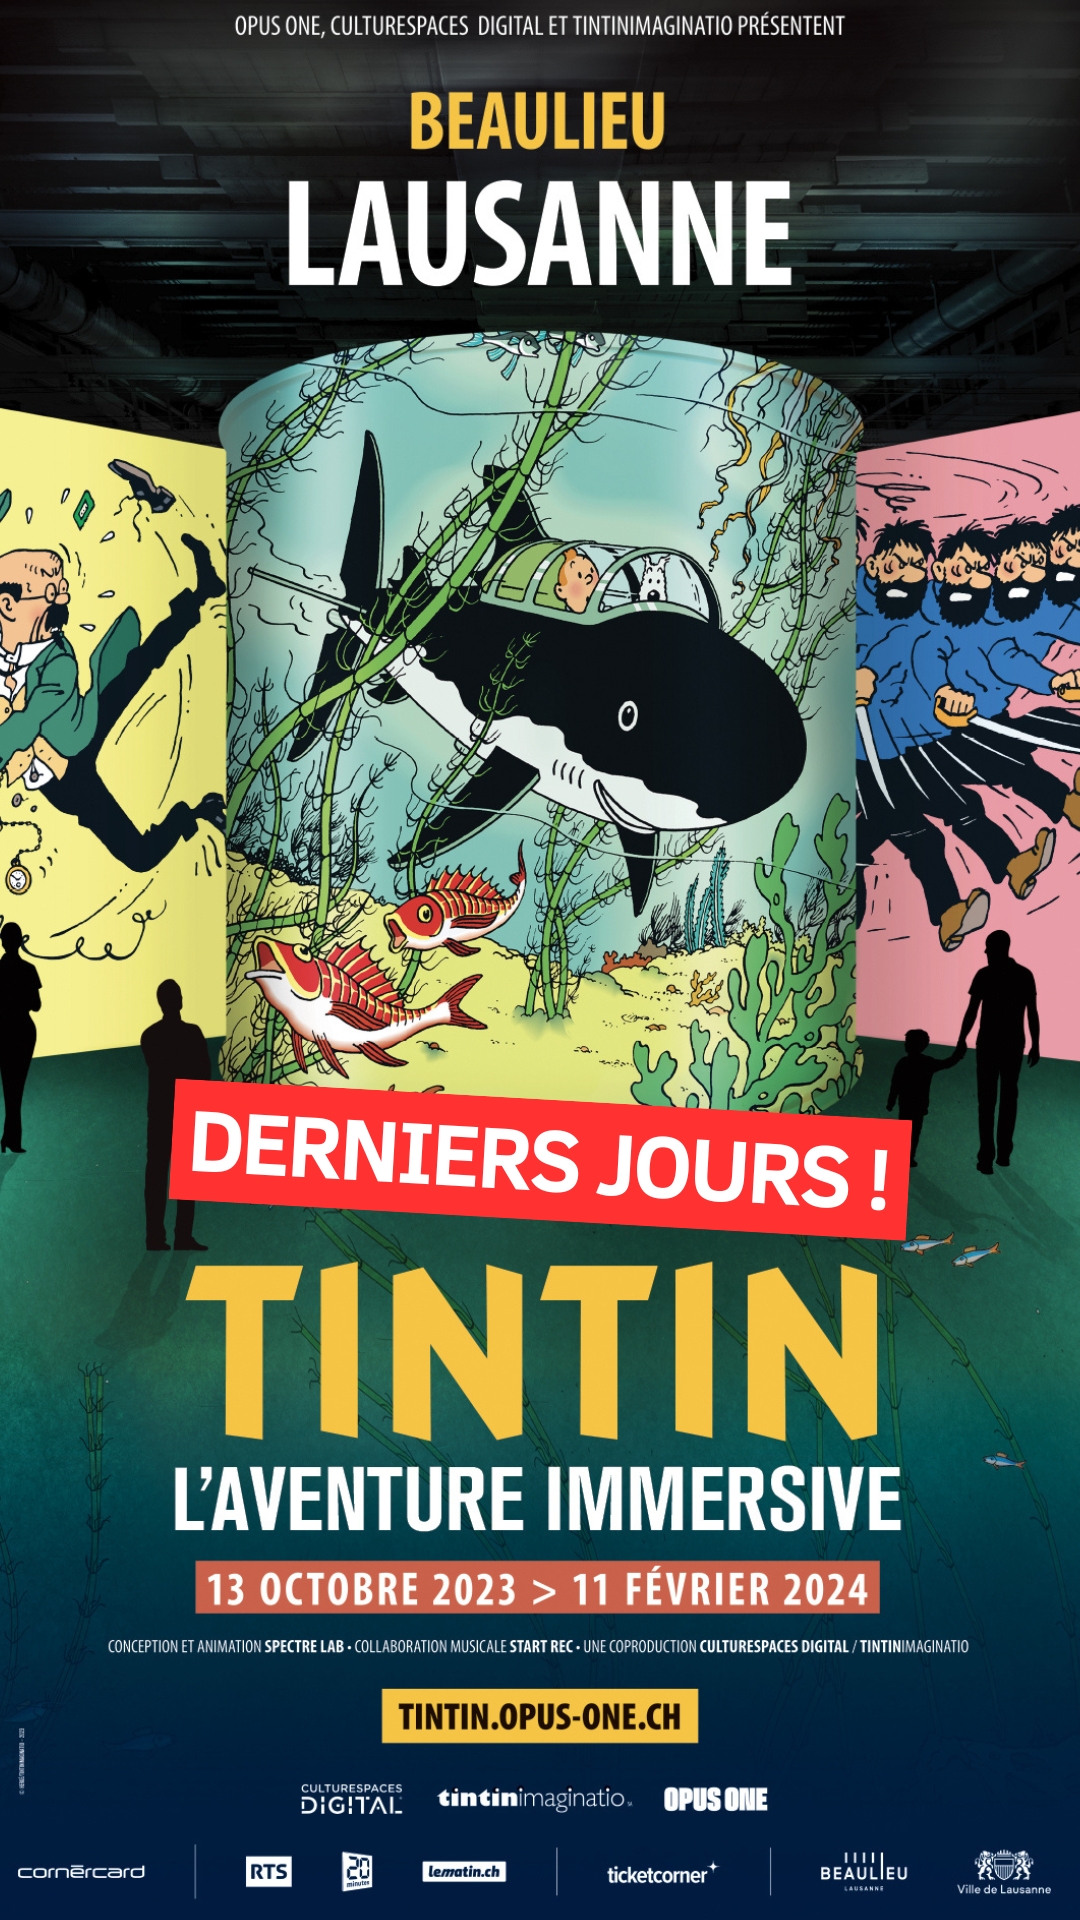 Tintin, l'aventure immersive  Exposition immersive à Lausanne